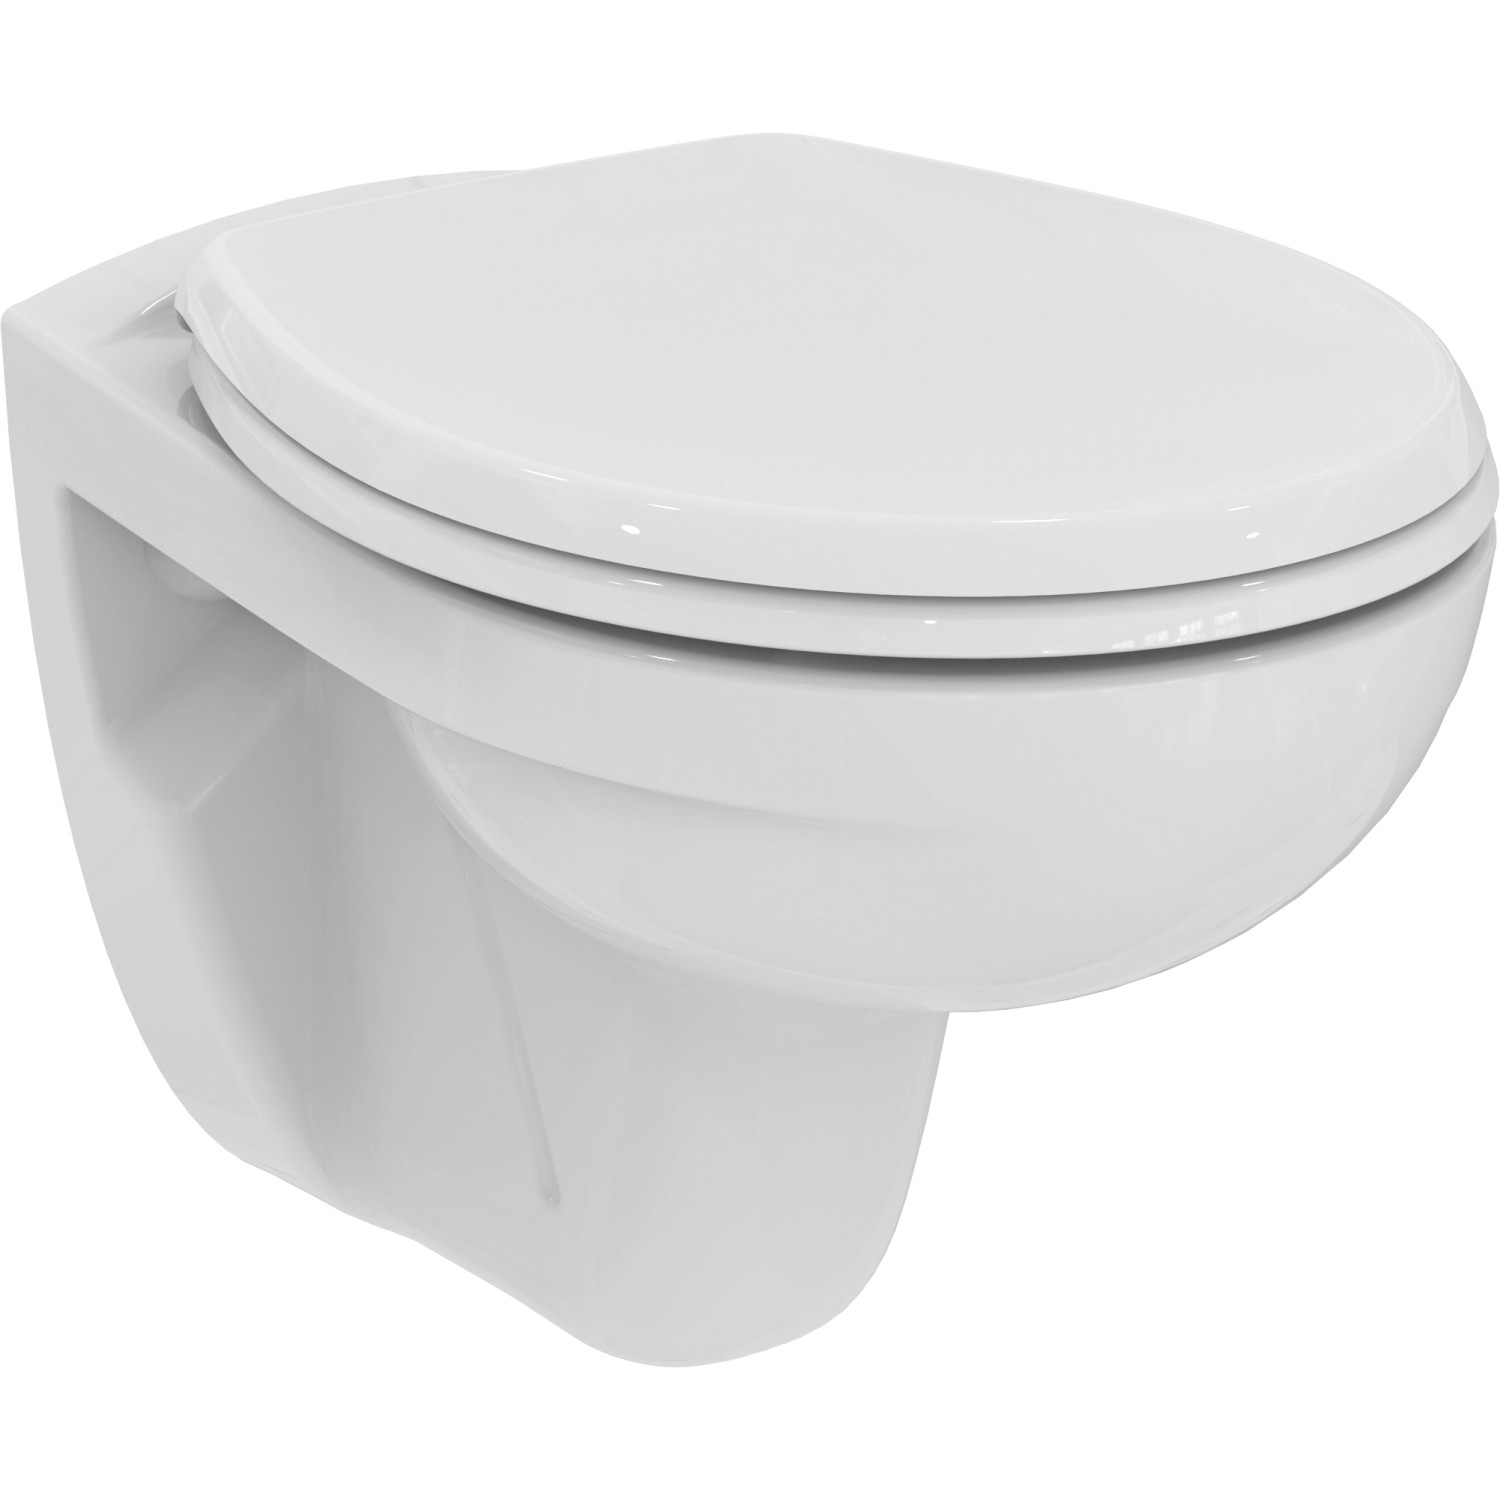 Ideal Standard WC-Paket Eurovit ohne Spülrand Weiß